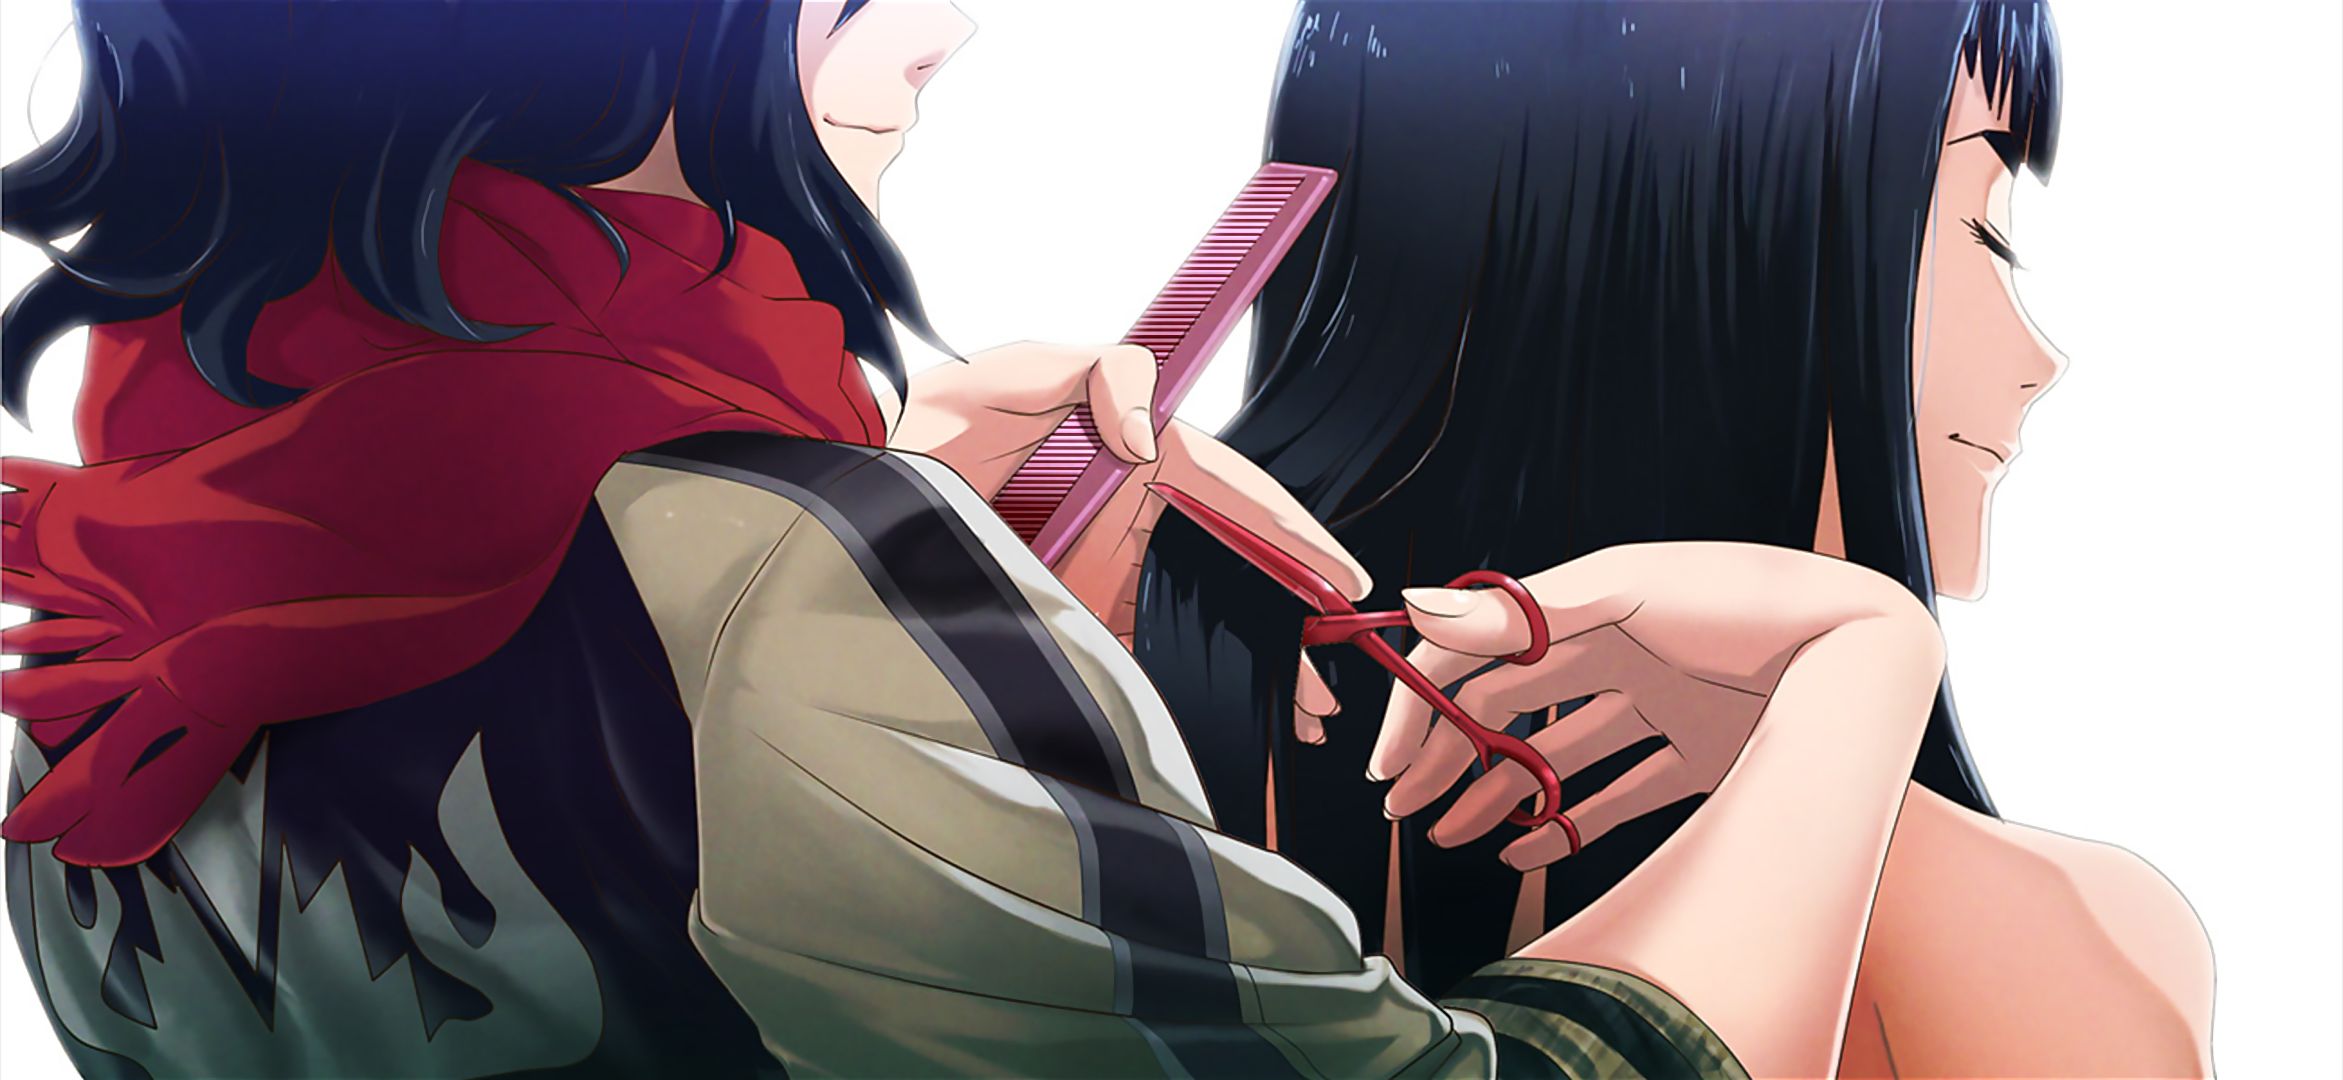 Descarga gratuita de fondo de pantalla para móvil de Animado, Ryūko Matoi, Kiru Ra Kiru: Kill La Kill, Satsuki Kiryūin.